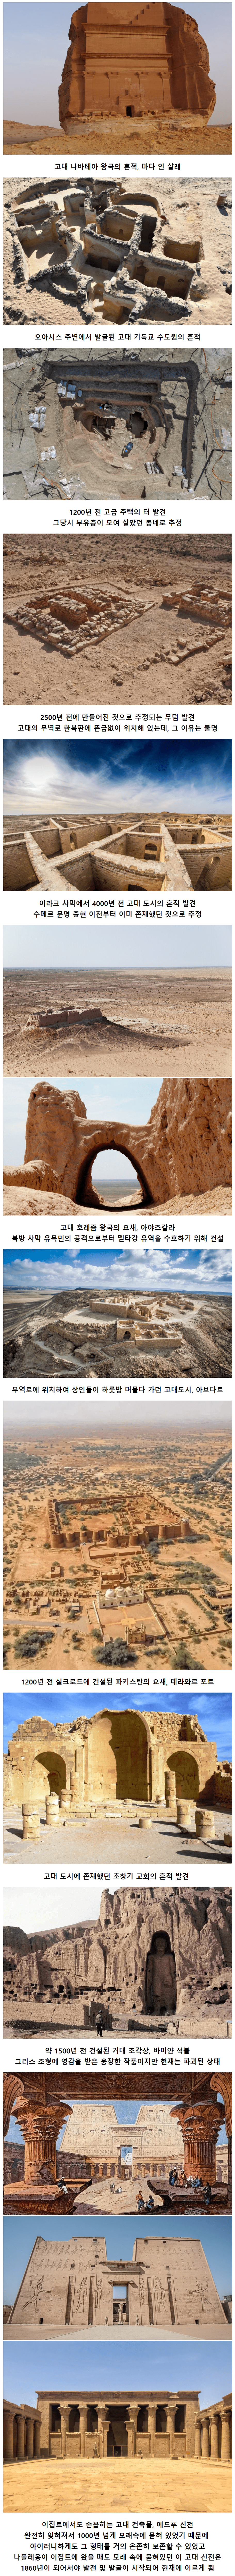 사막에서 발견된 고고학 건축물들.....jpg